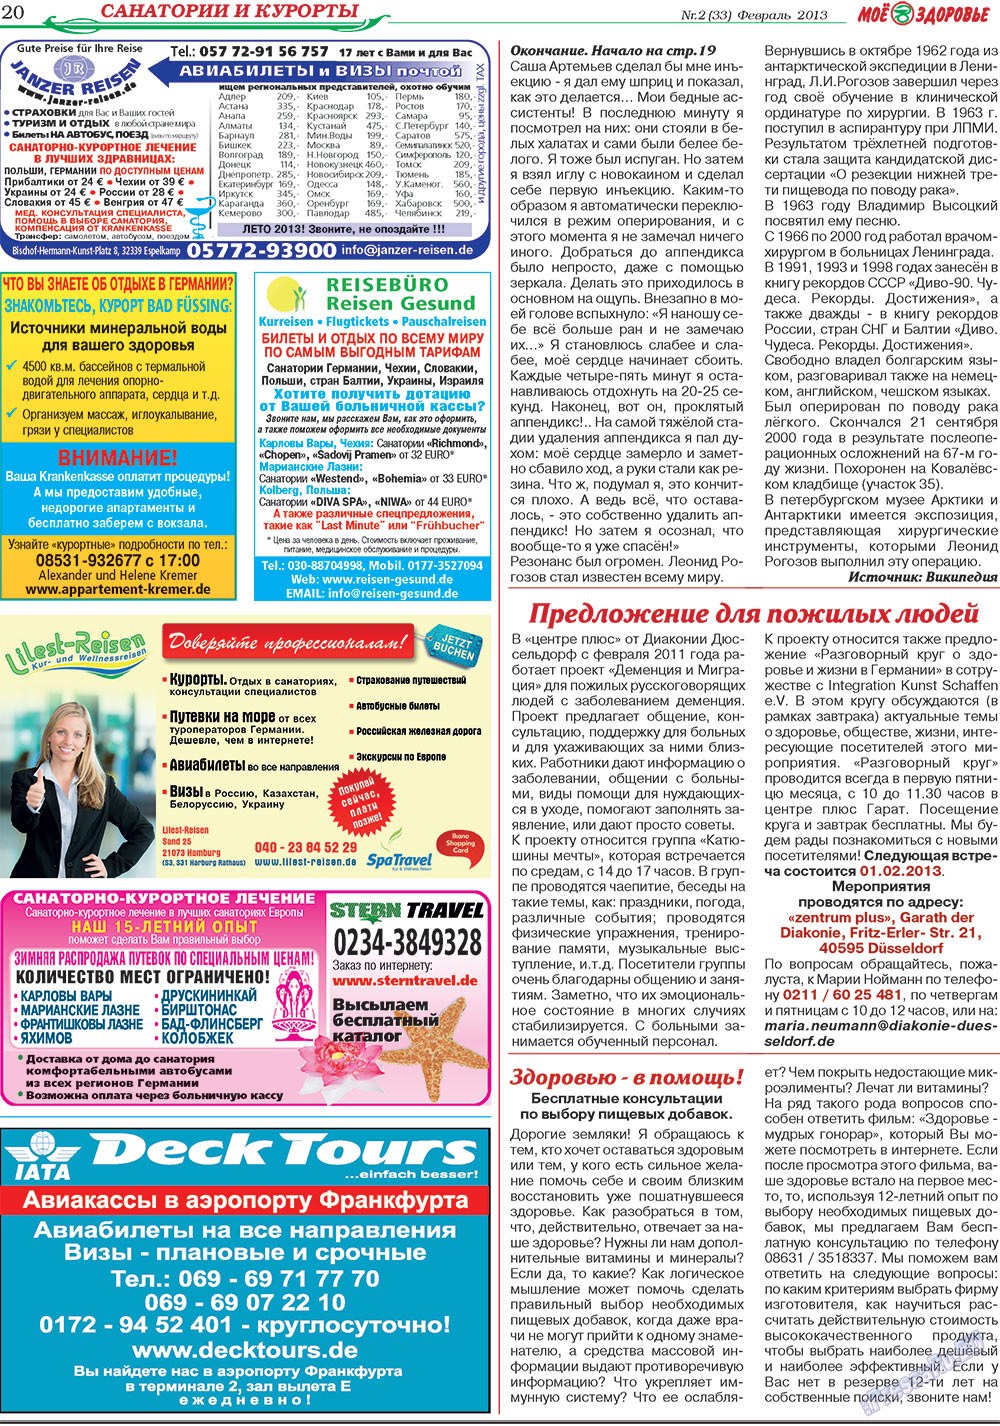 Кругозор, газета. 2013 №2 стр.20